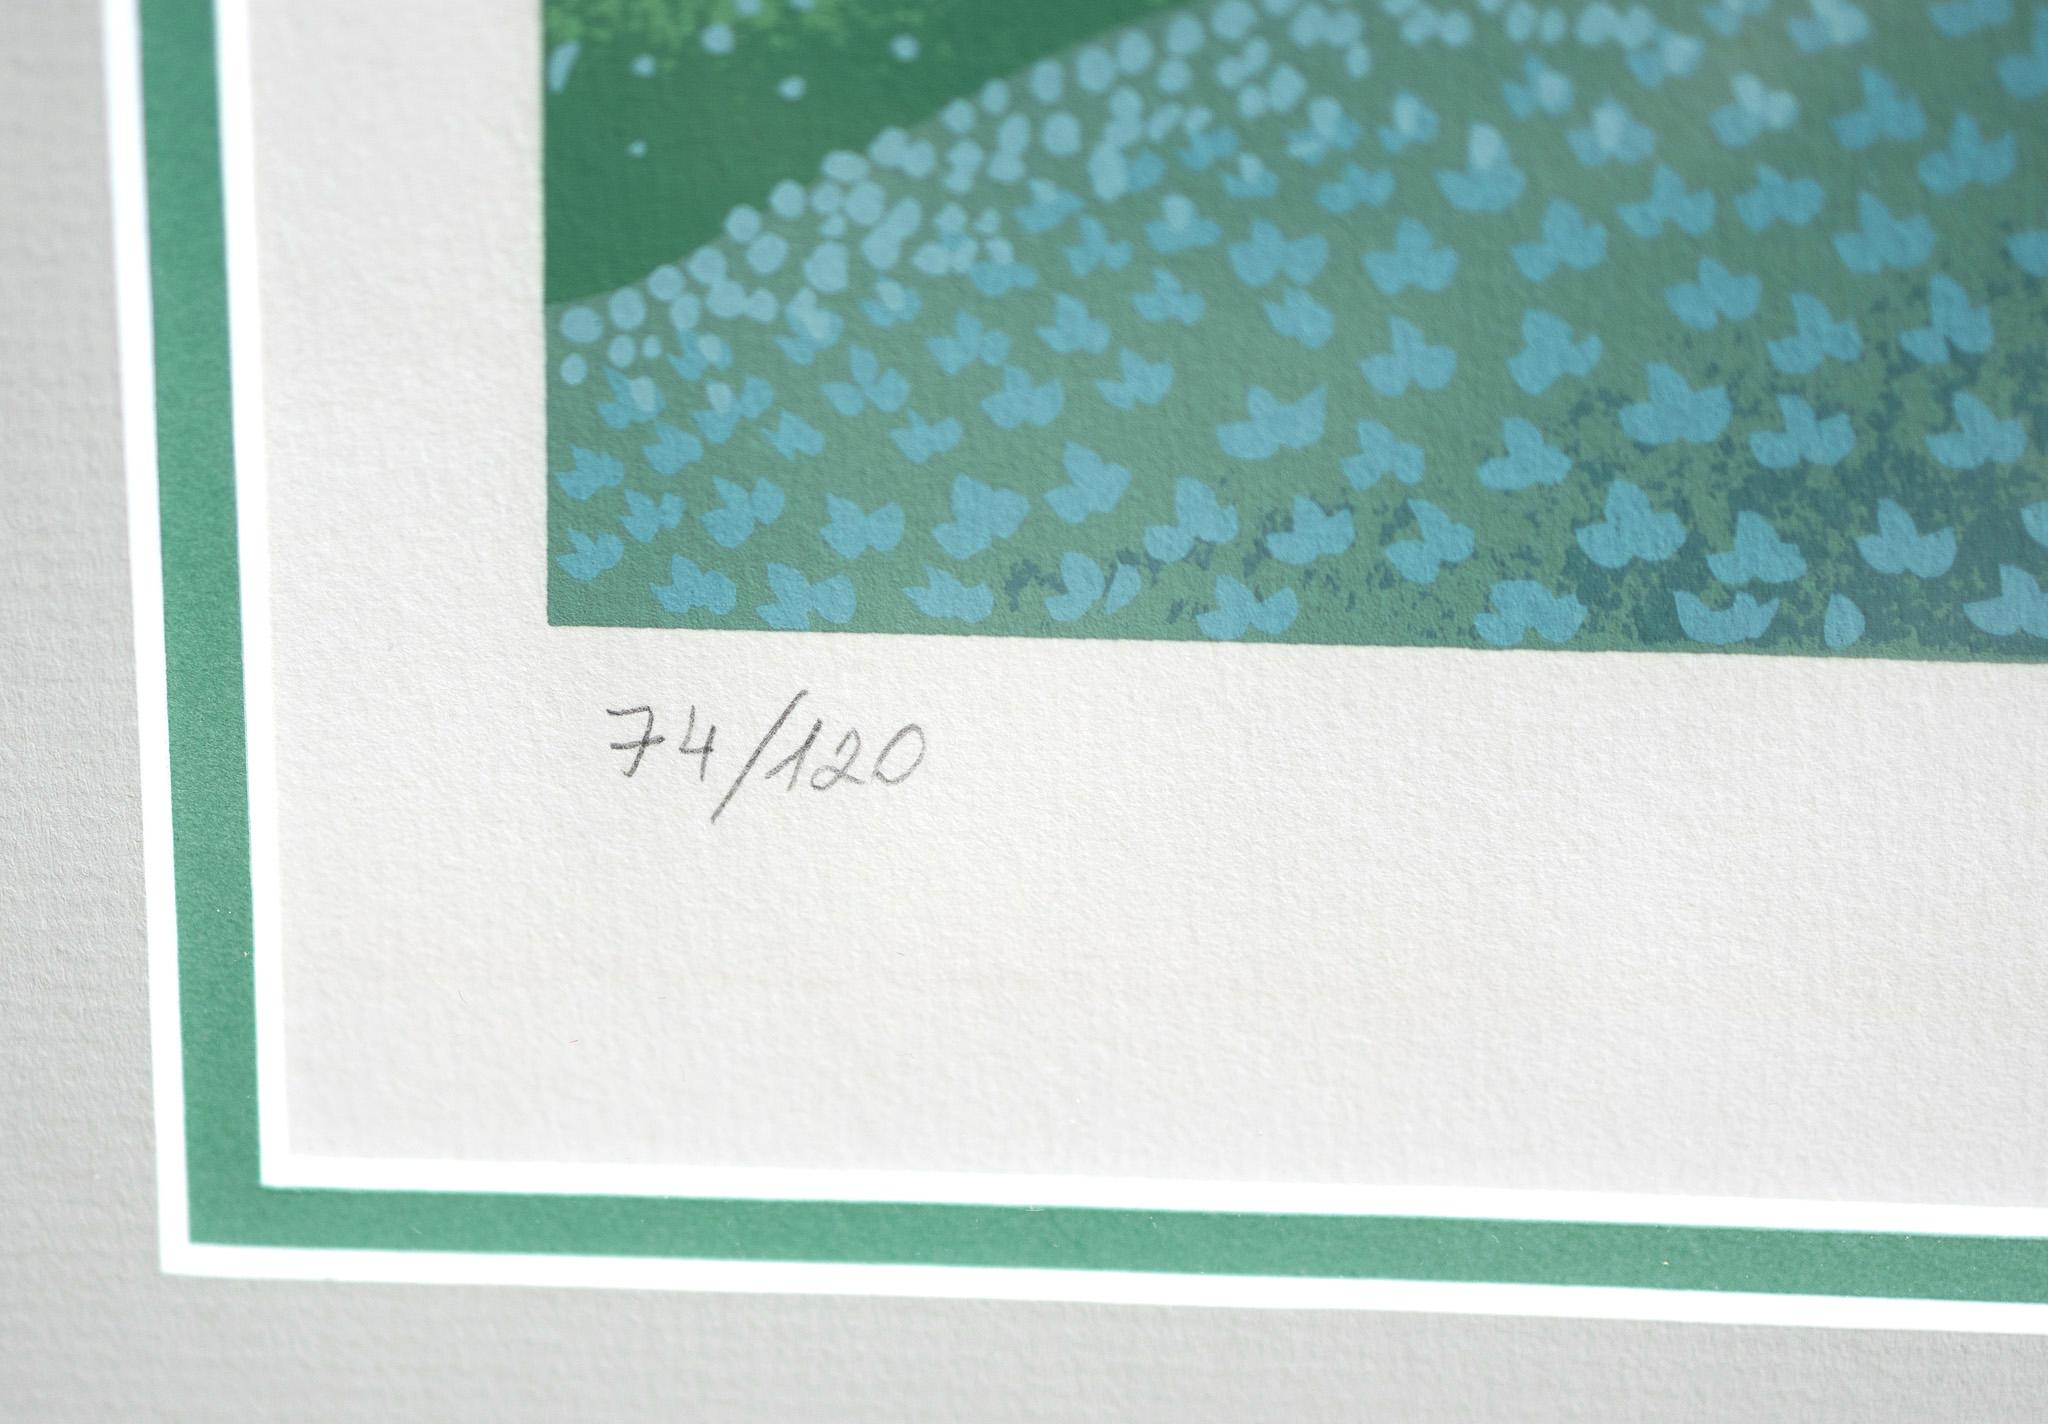 Cette sérigraphie surréaliste d'Ivan Up&Up représente un gros plan d'une marguerite dans un champ, donnant la perspective que la marguerite est aussi grande que les arbres à l'arrière-plan. La palette de couleurs contient des bleus clairs, des verts